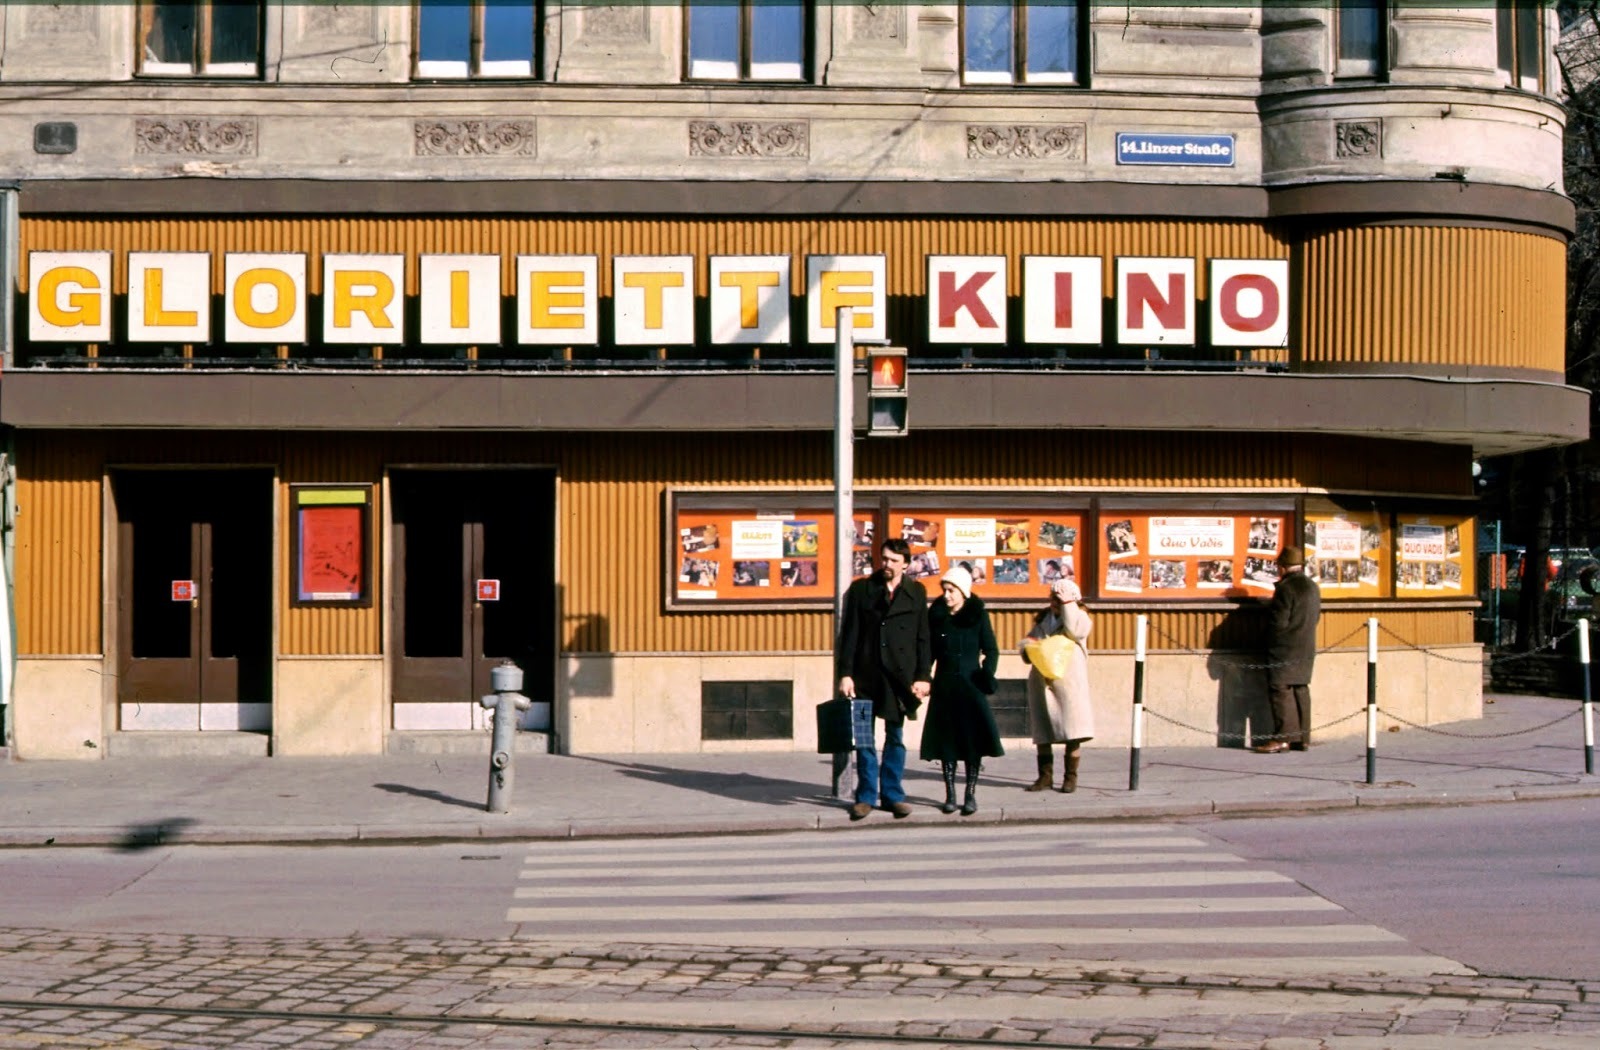 mehr-fotos-von-wiener-kinos-aus-dem-jahr-1980-vice